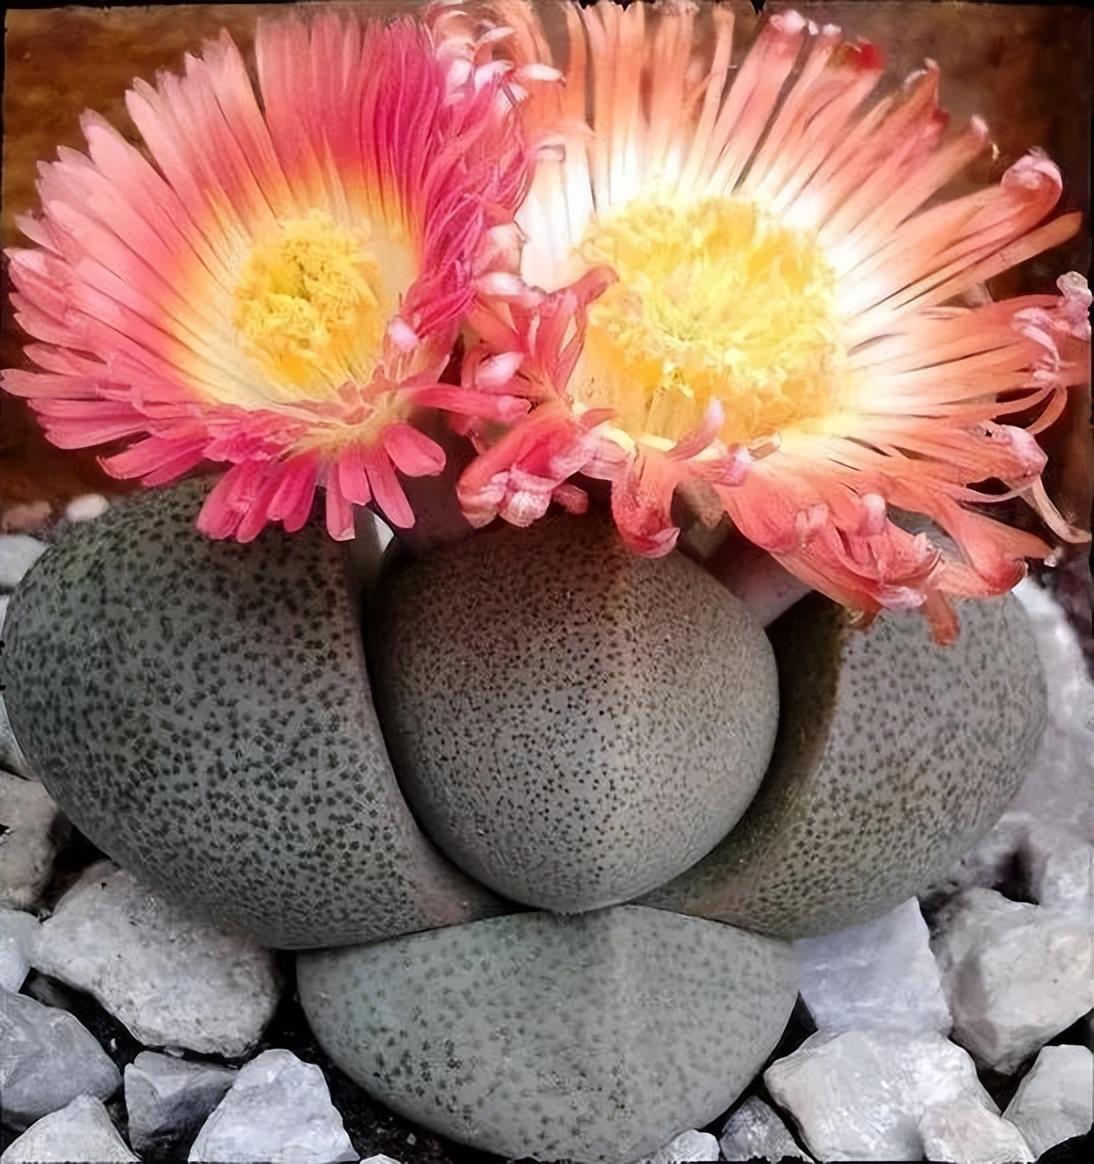 石头花盆-让石头开出石头花一般的美丽